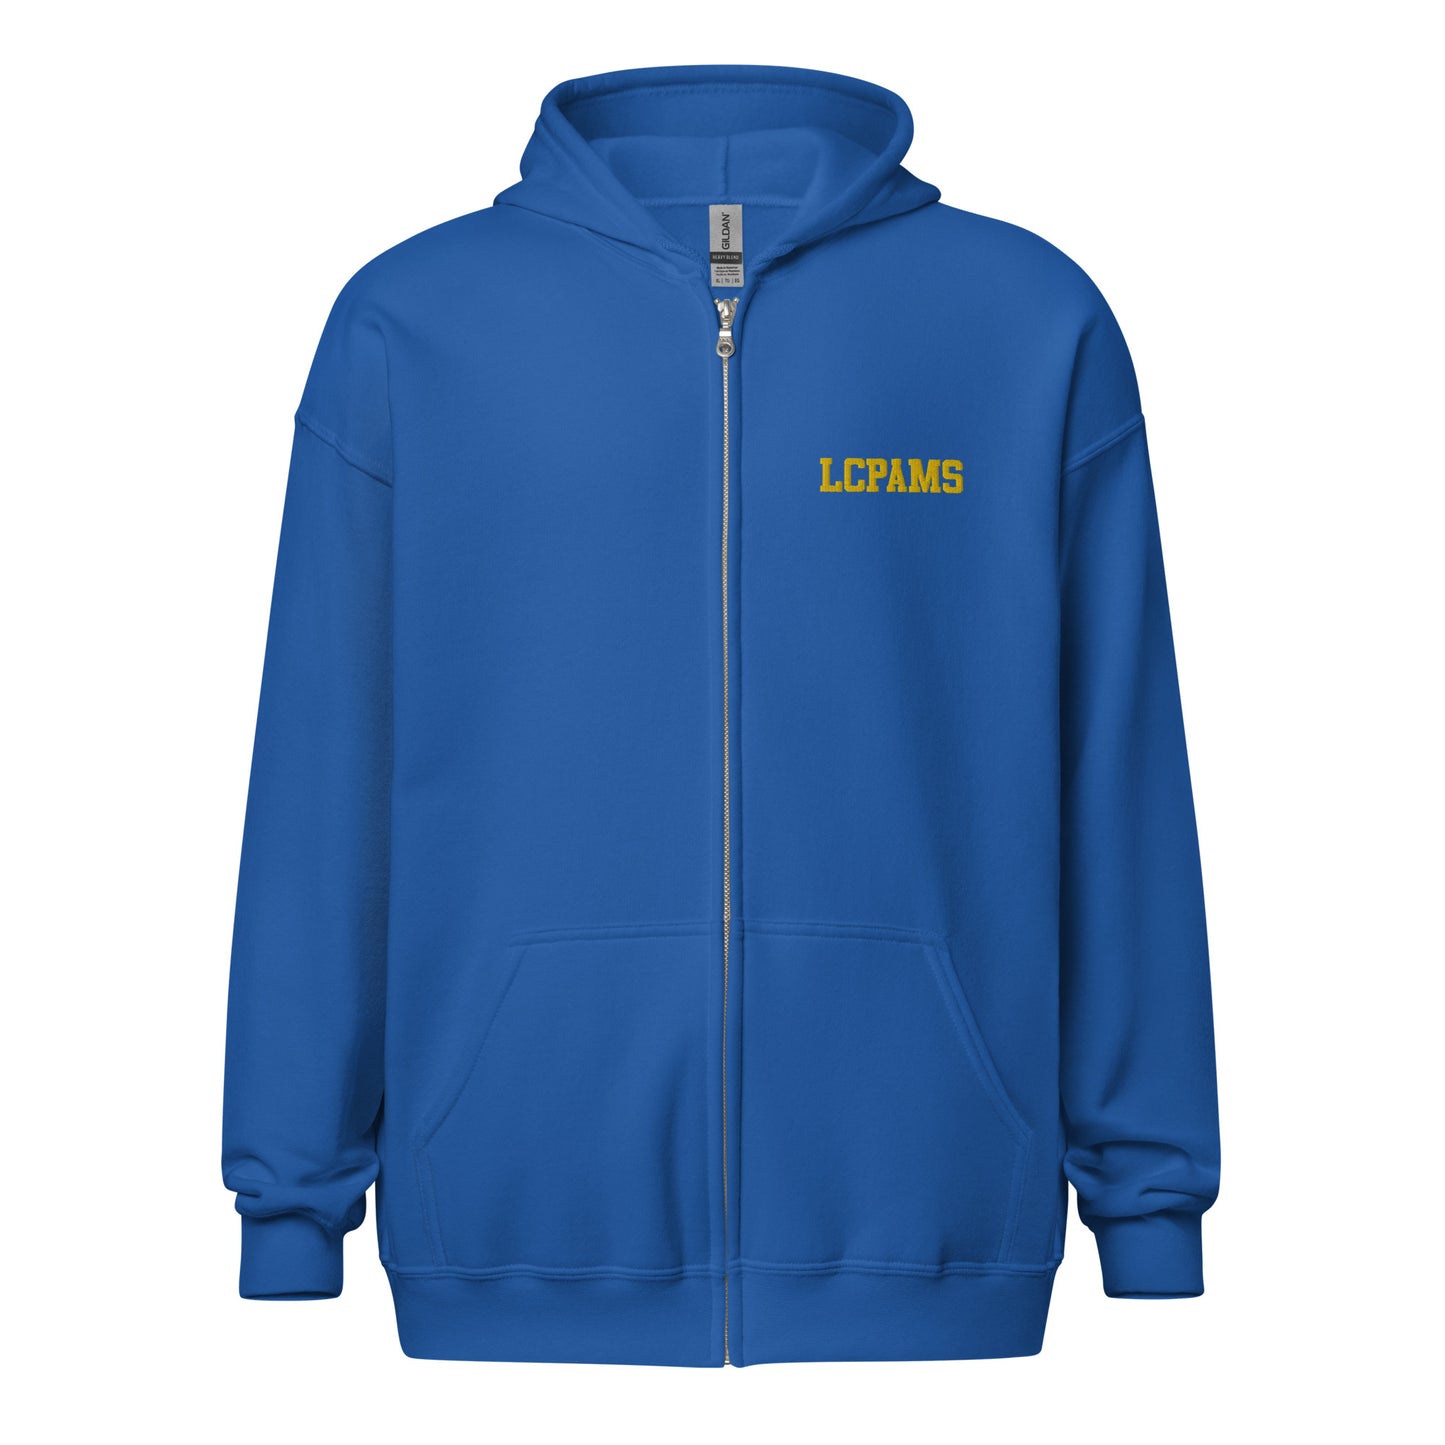 Lincoln Middle School zip hoodie